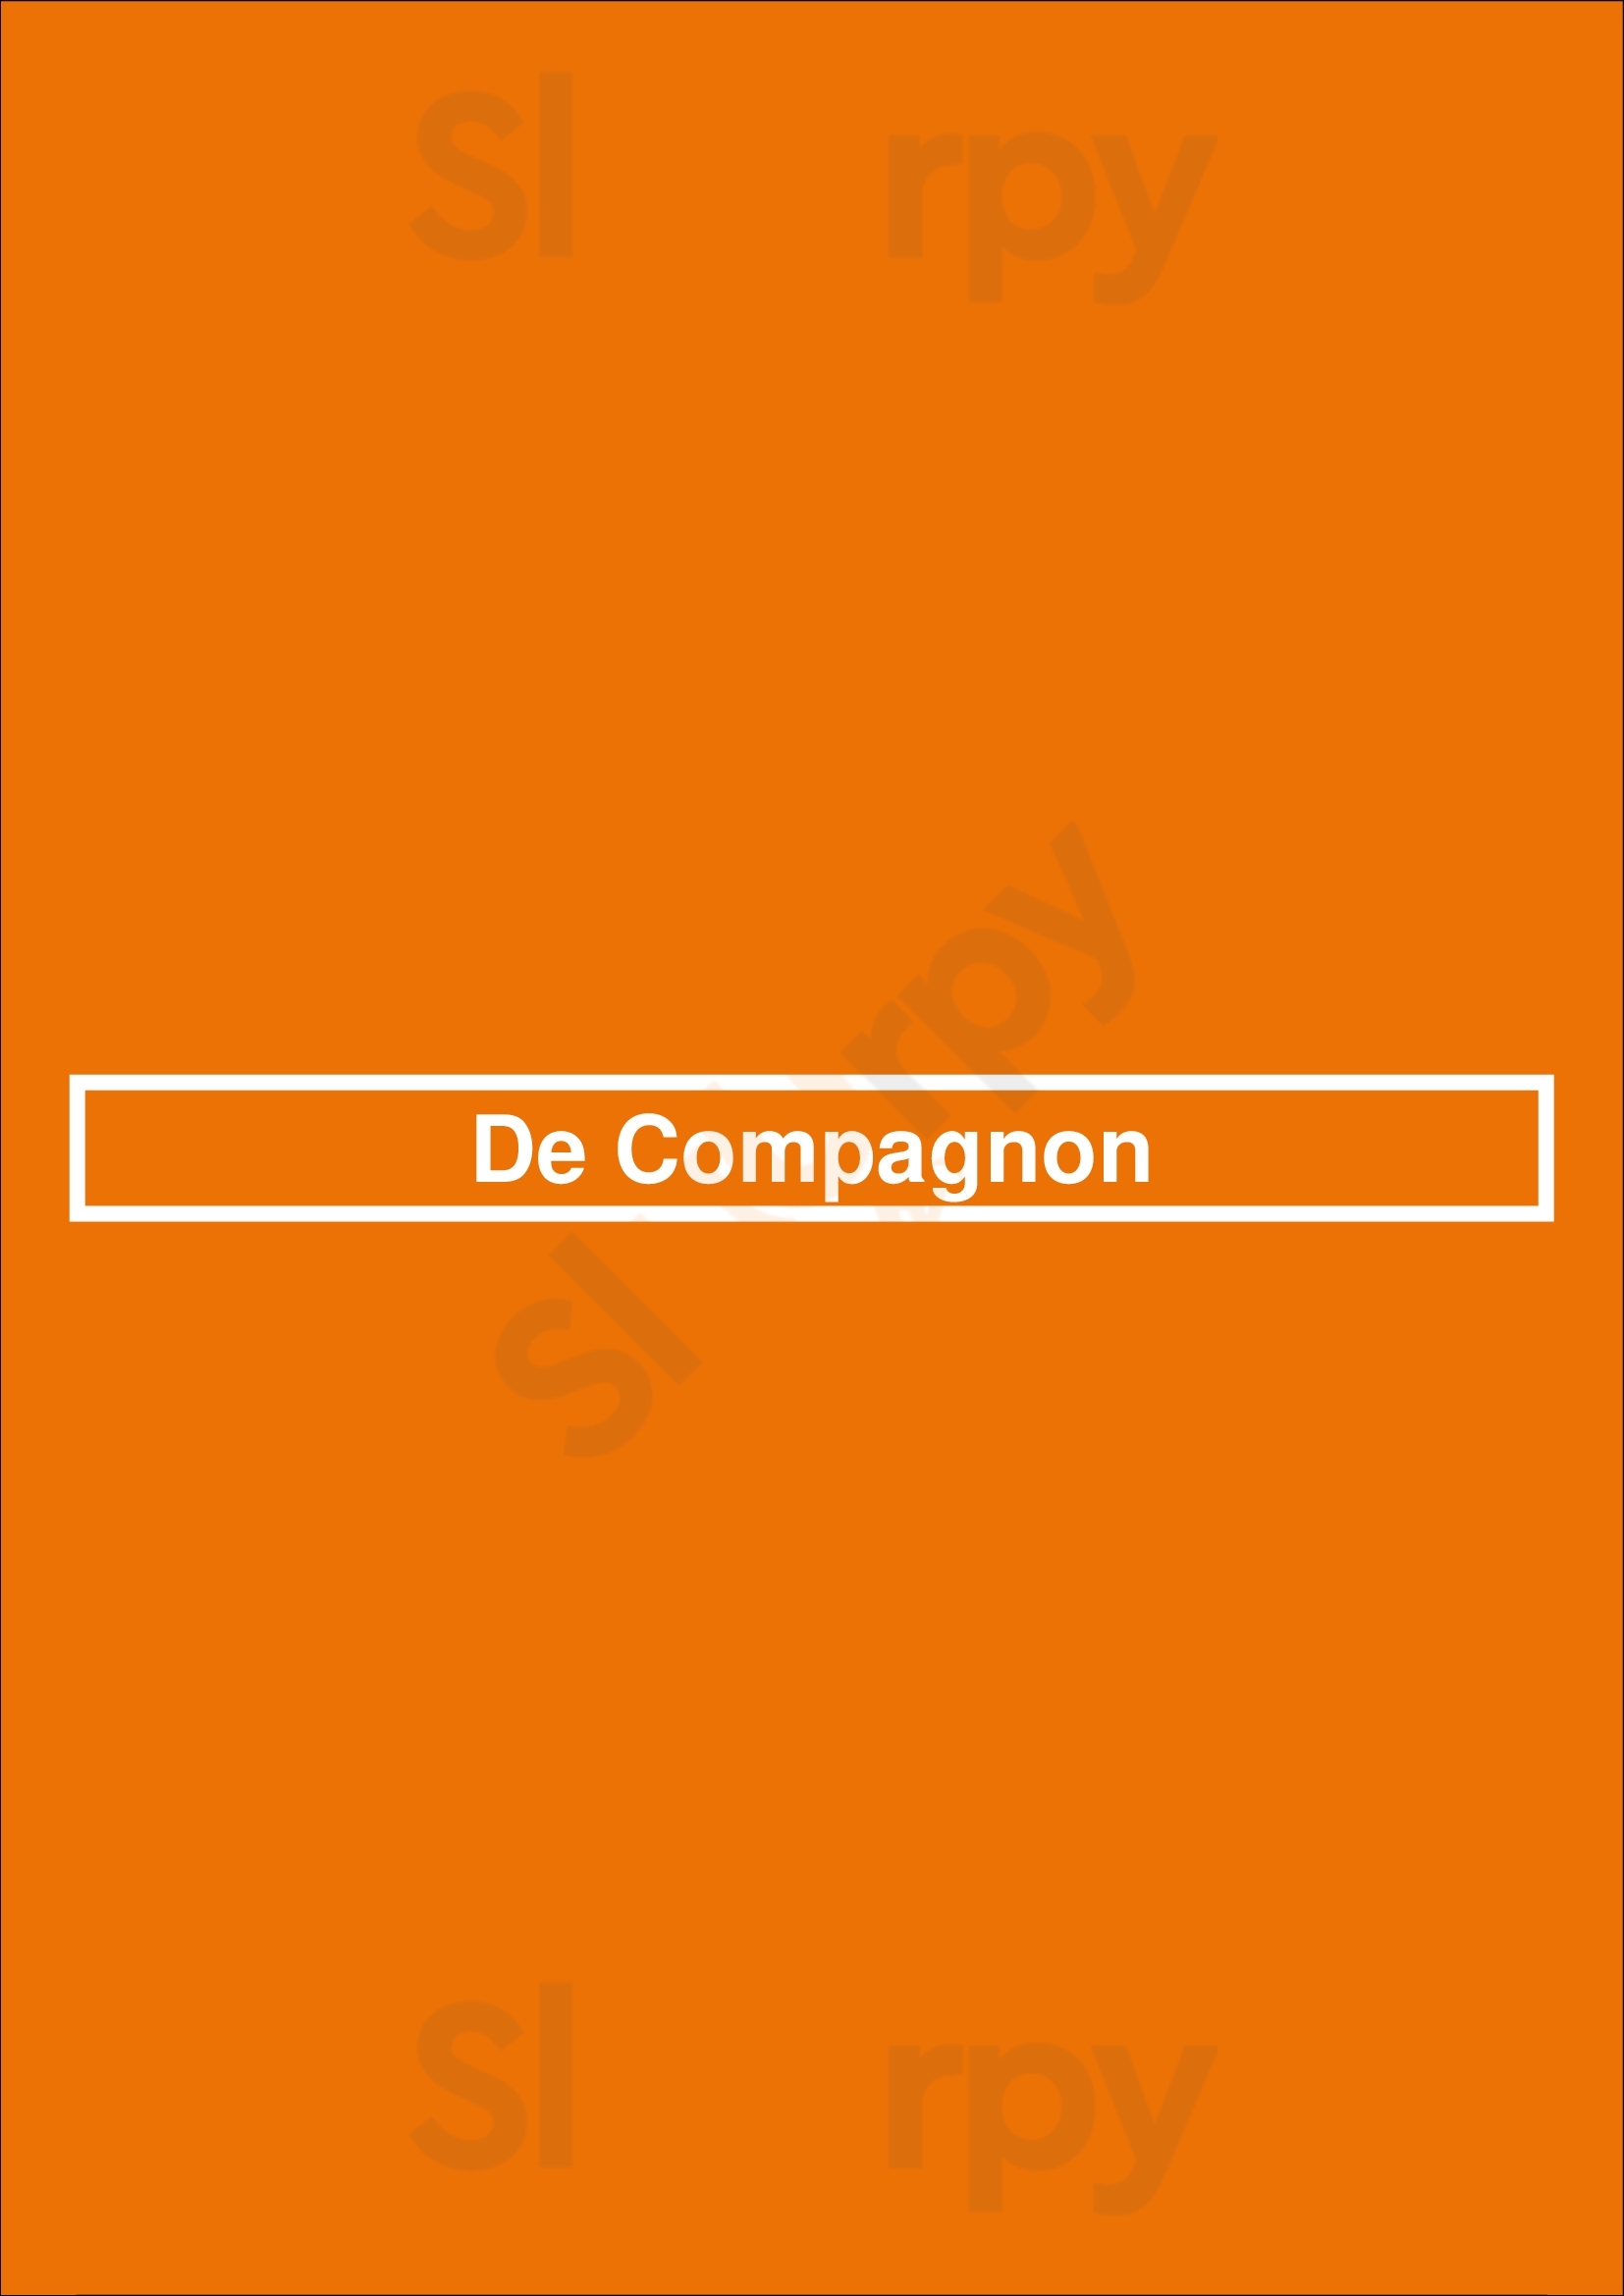 De Compagnon Amsterdam Menu - 1